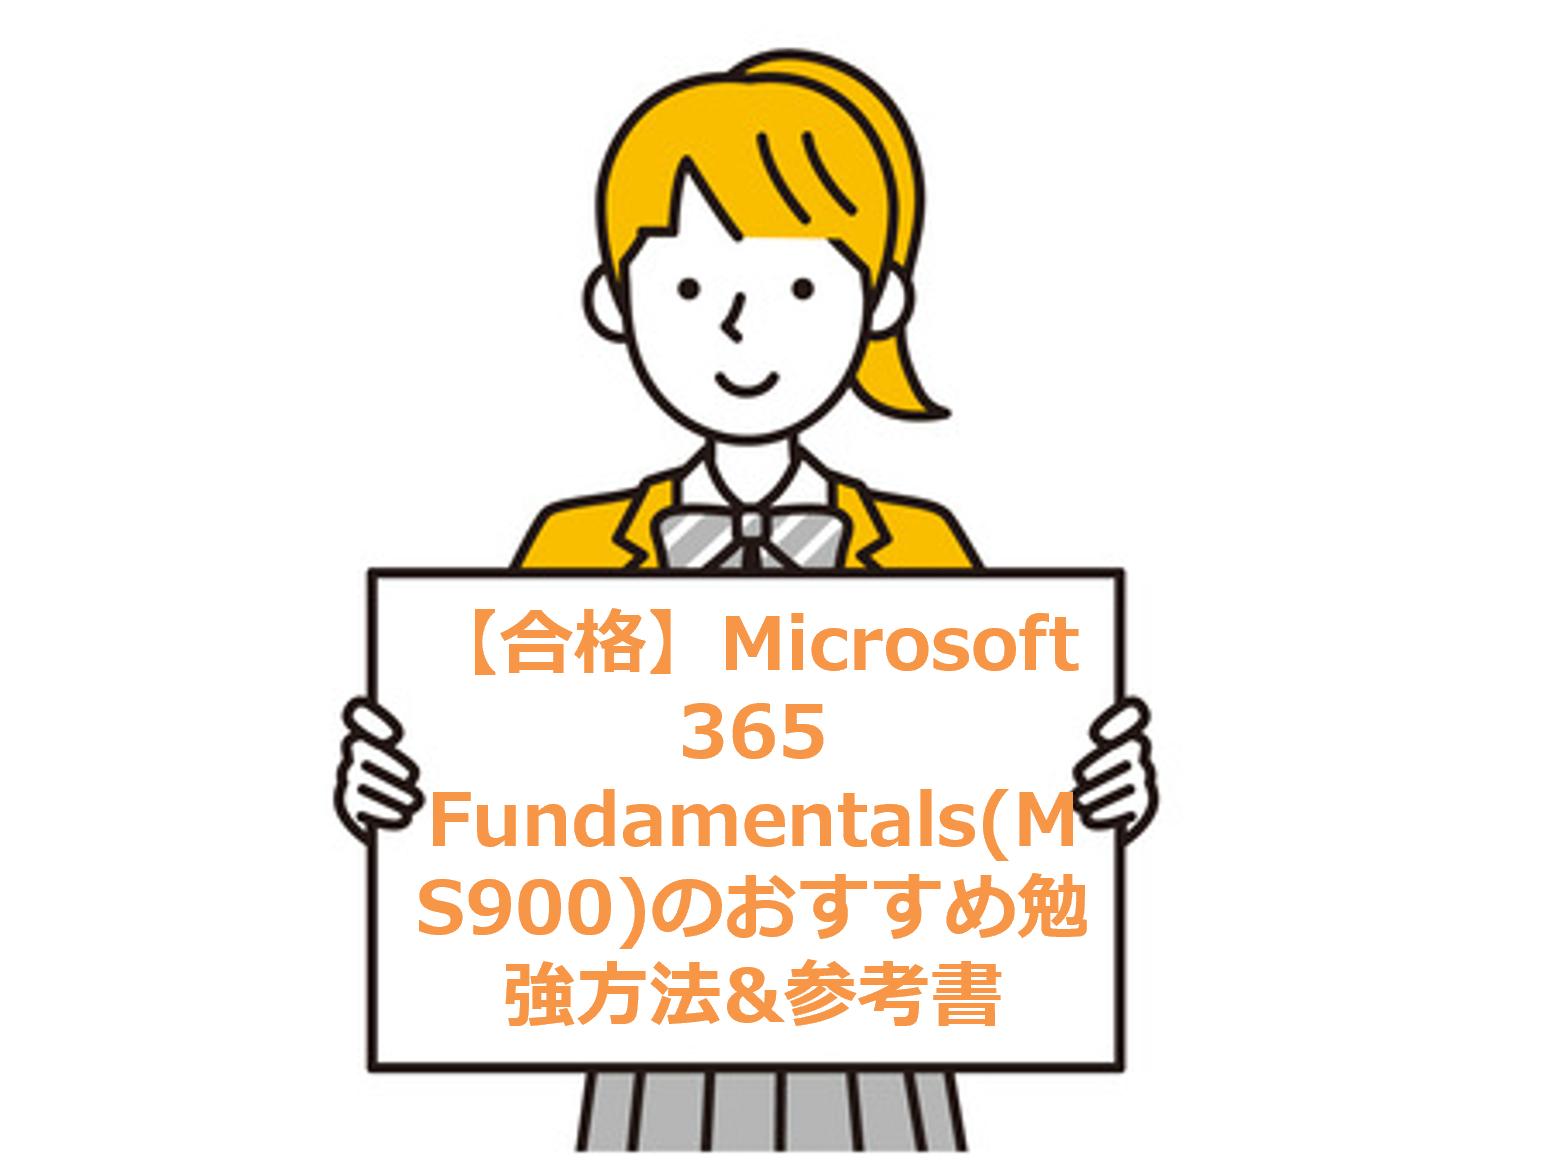 【合格】Microsoft 365 Fundamentals(MS900)のおすすめ勉強方法&参考書